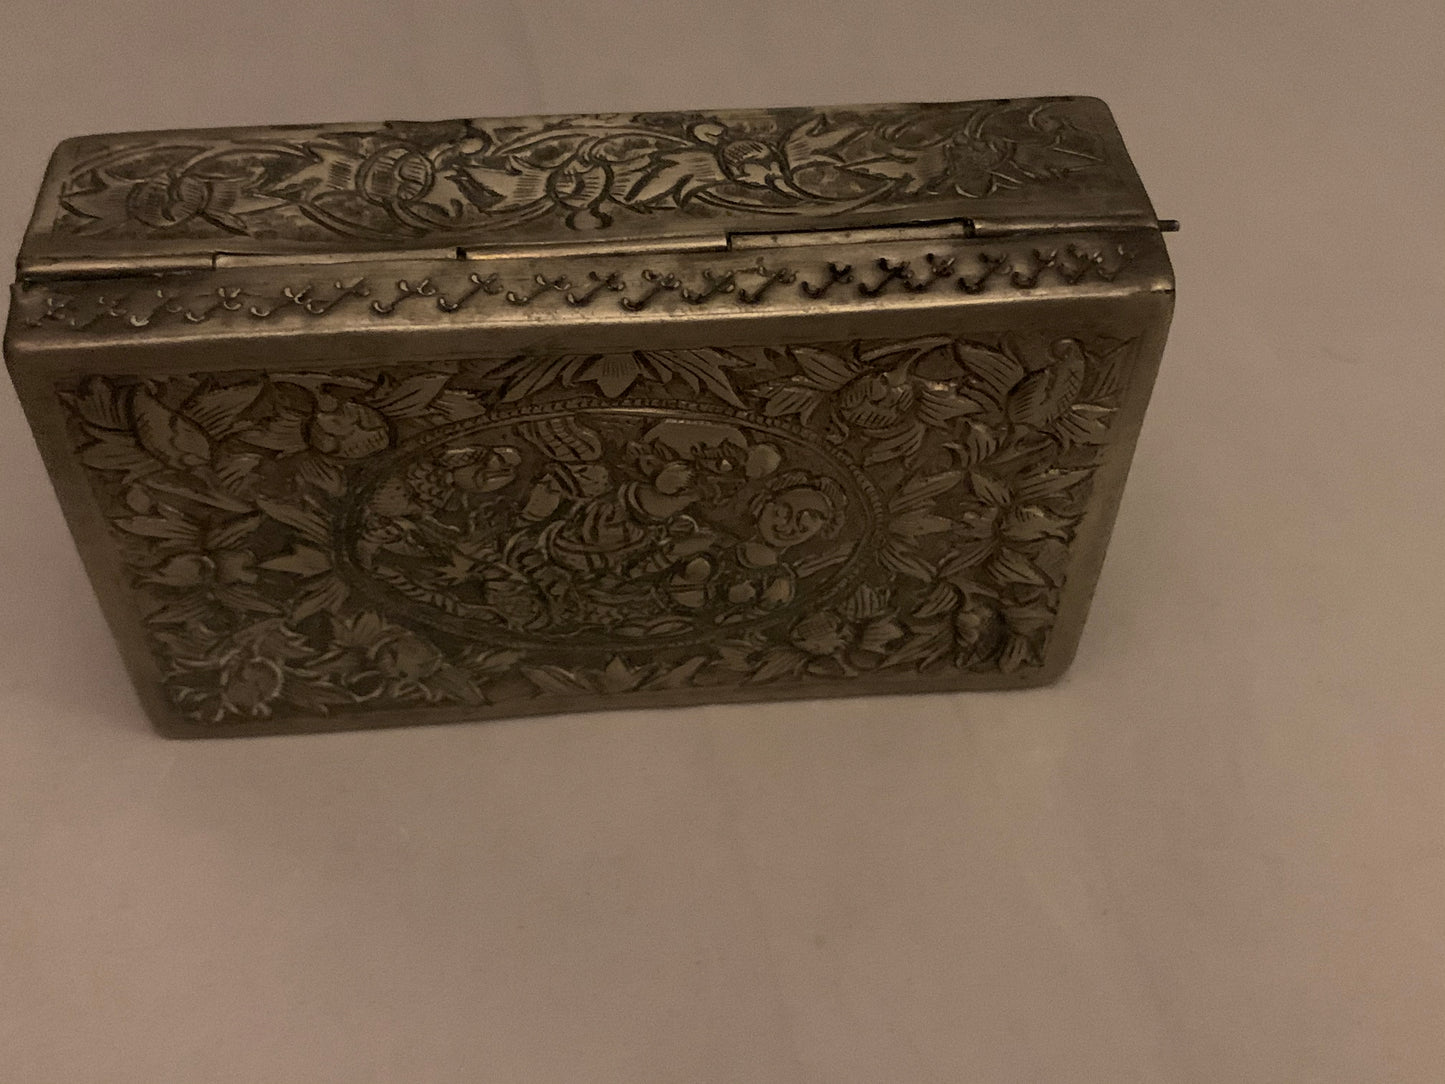 A silver repousse box